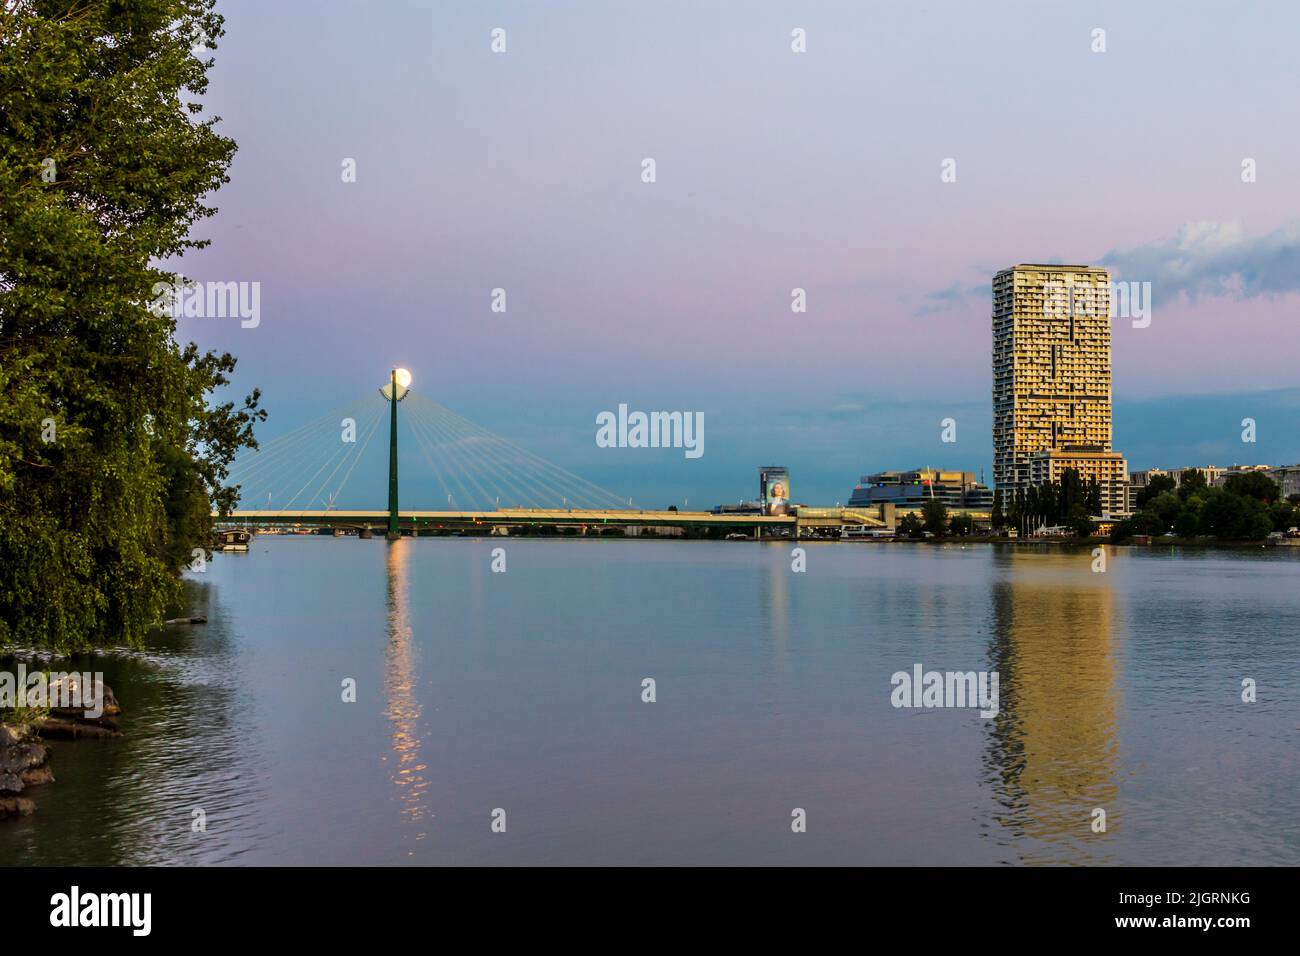 Wien, Viena: río Donau (Danubio), torre de altura Marina, metro en el puente del metro Donaustadtbrücke, luna llena, vista desde la isla Donauinsel en 02. Le Foto de stock